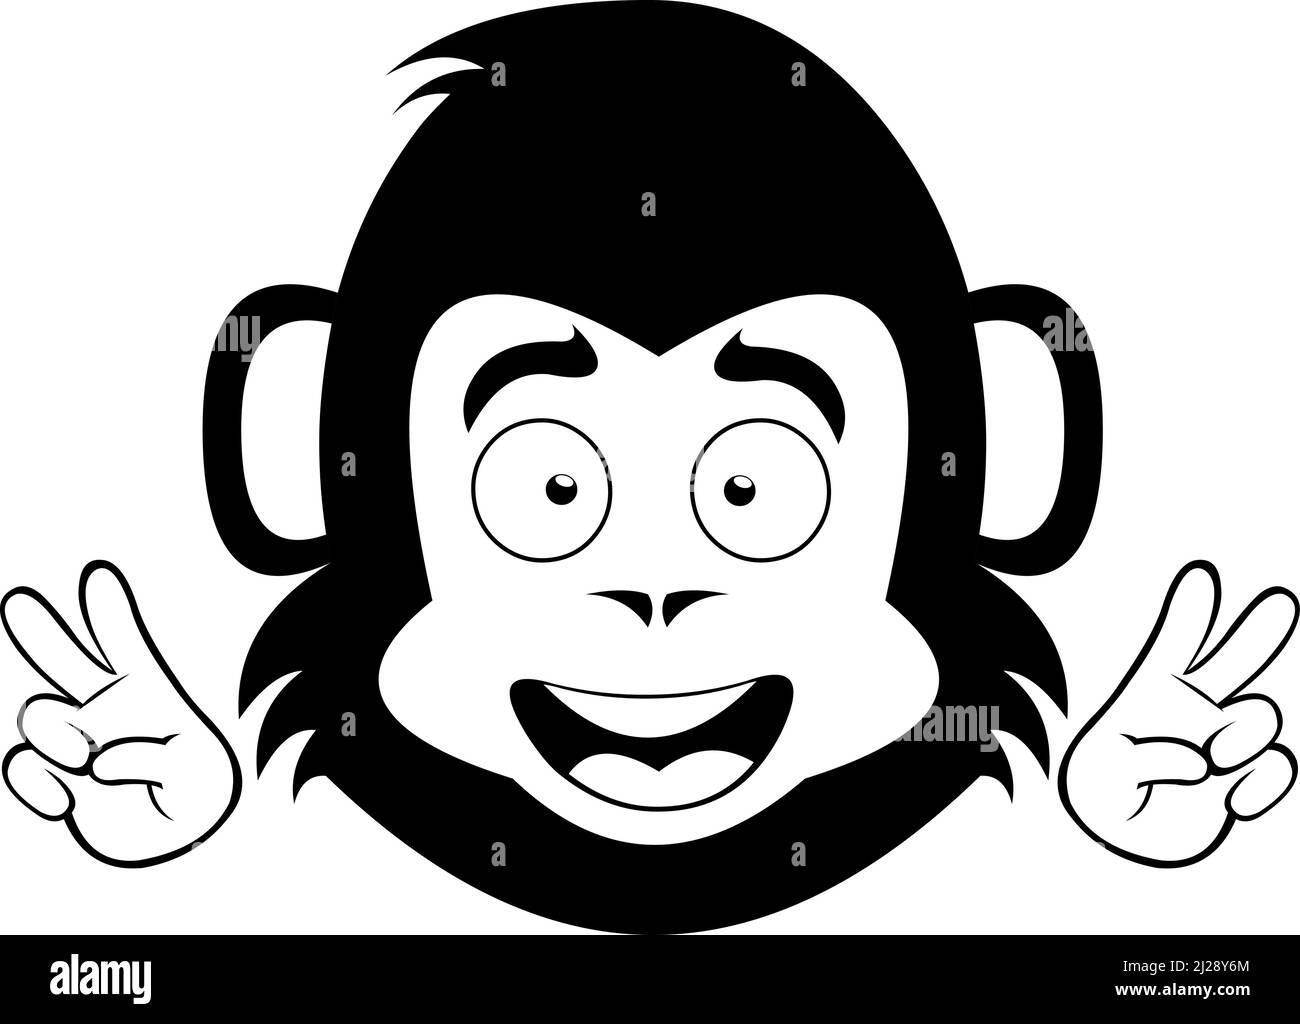 Vektor-Illustration des Gesichts eines Cartoon-Affen oder Gorilla machen die klassische Liebe und Frieden oder V-Sieg Geste mit seinen Händen, in schwarz gezeichnet Stock Vektor